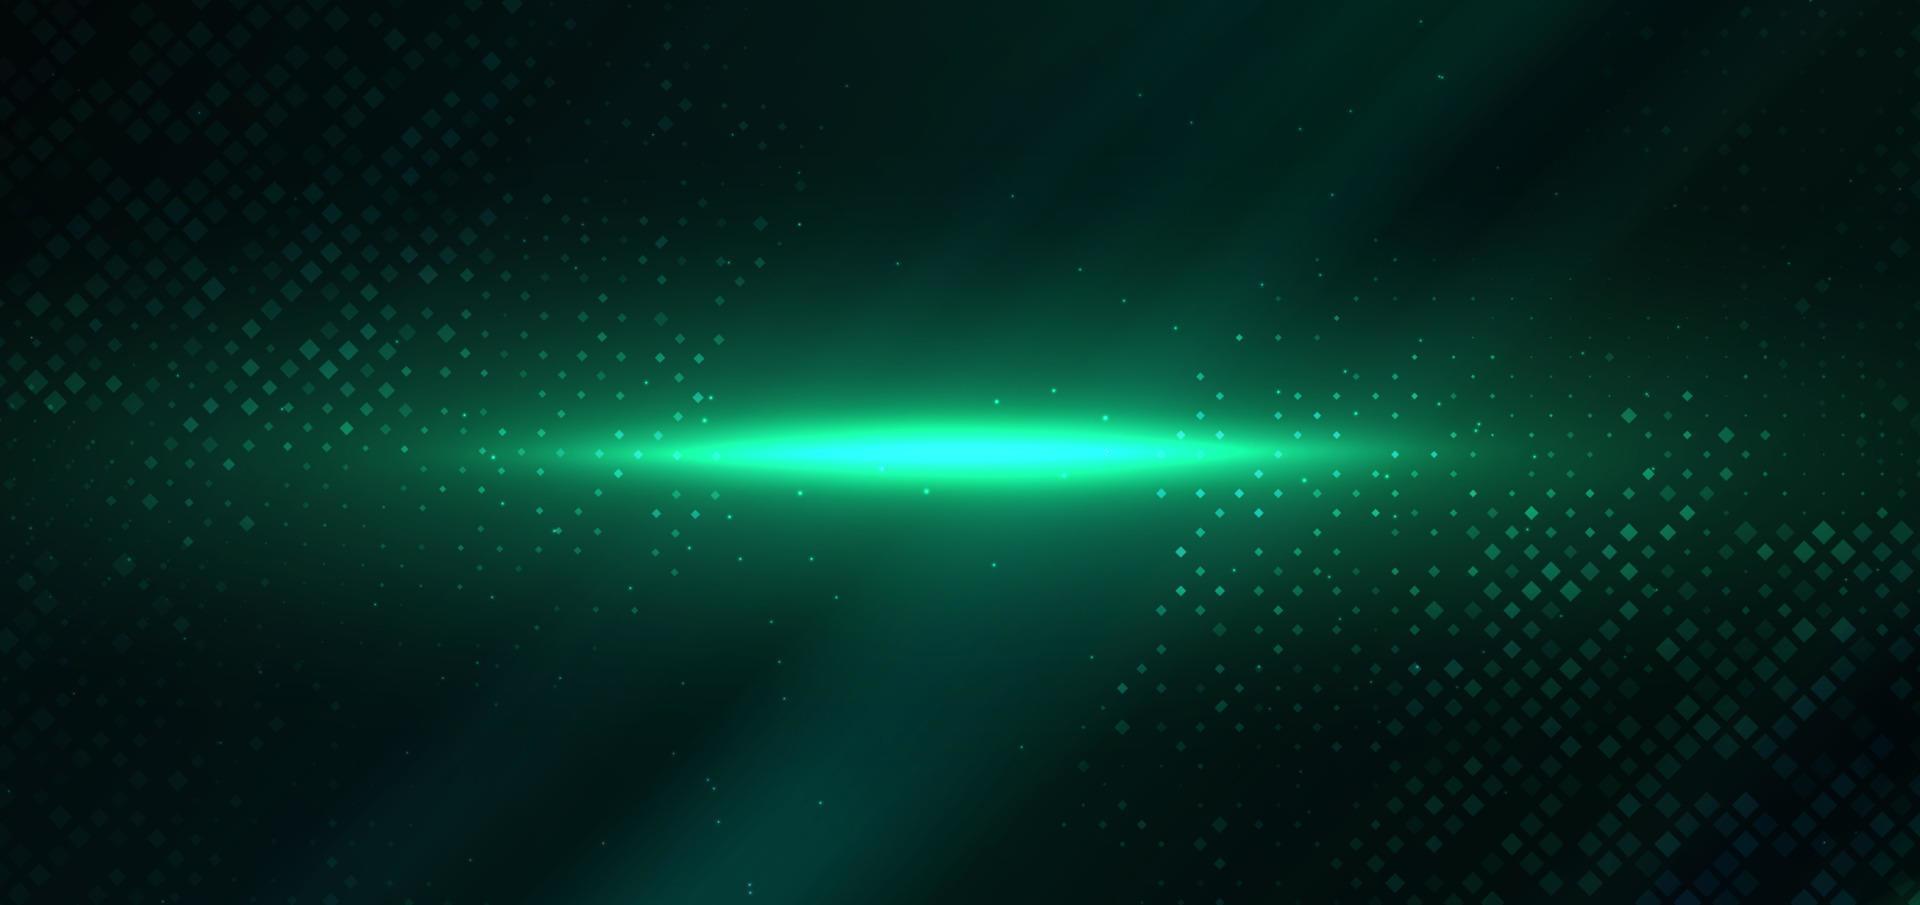 abstrakt teknologi trogen digital fyrkant mönster med belysning lysande partiklar fyrkant element på mörk grön bakgrund. vektor